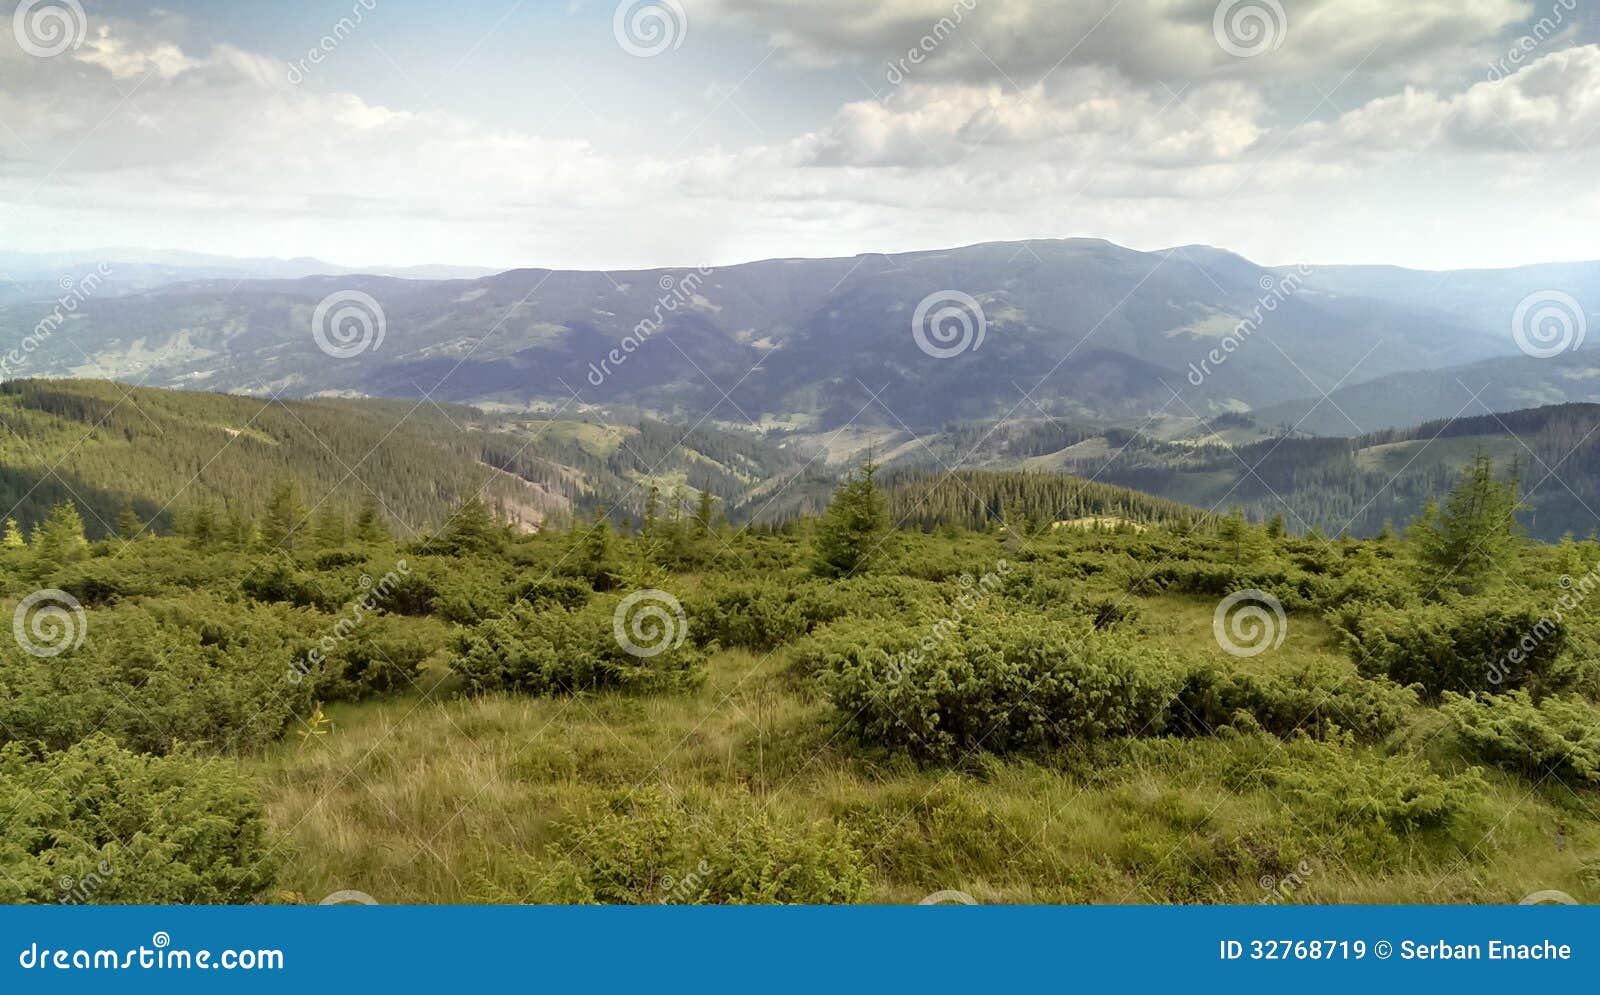 mountainous landscape